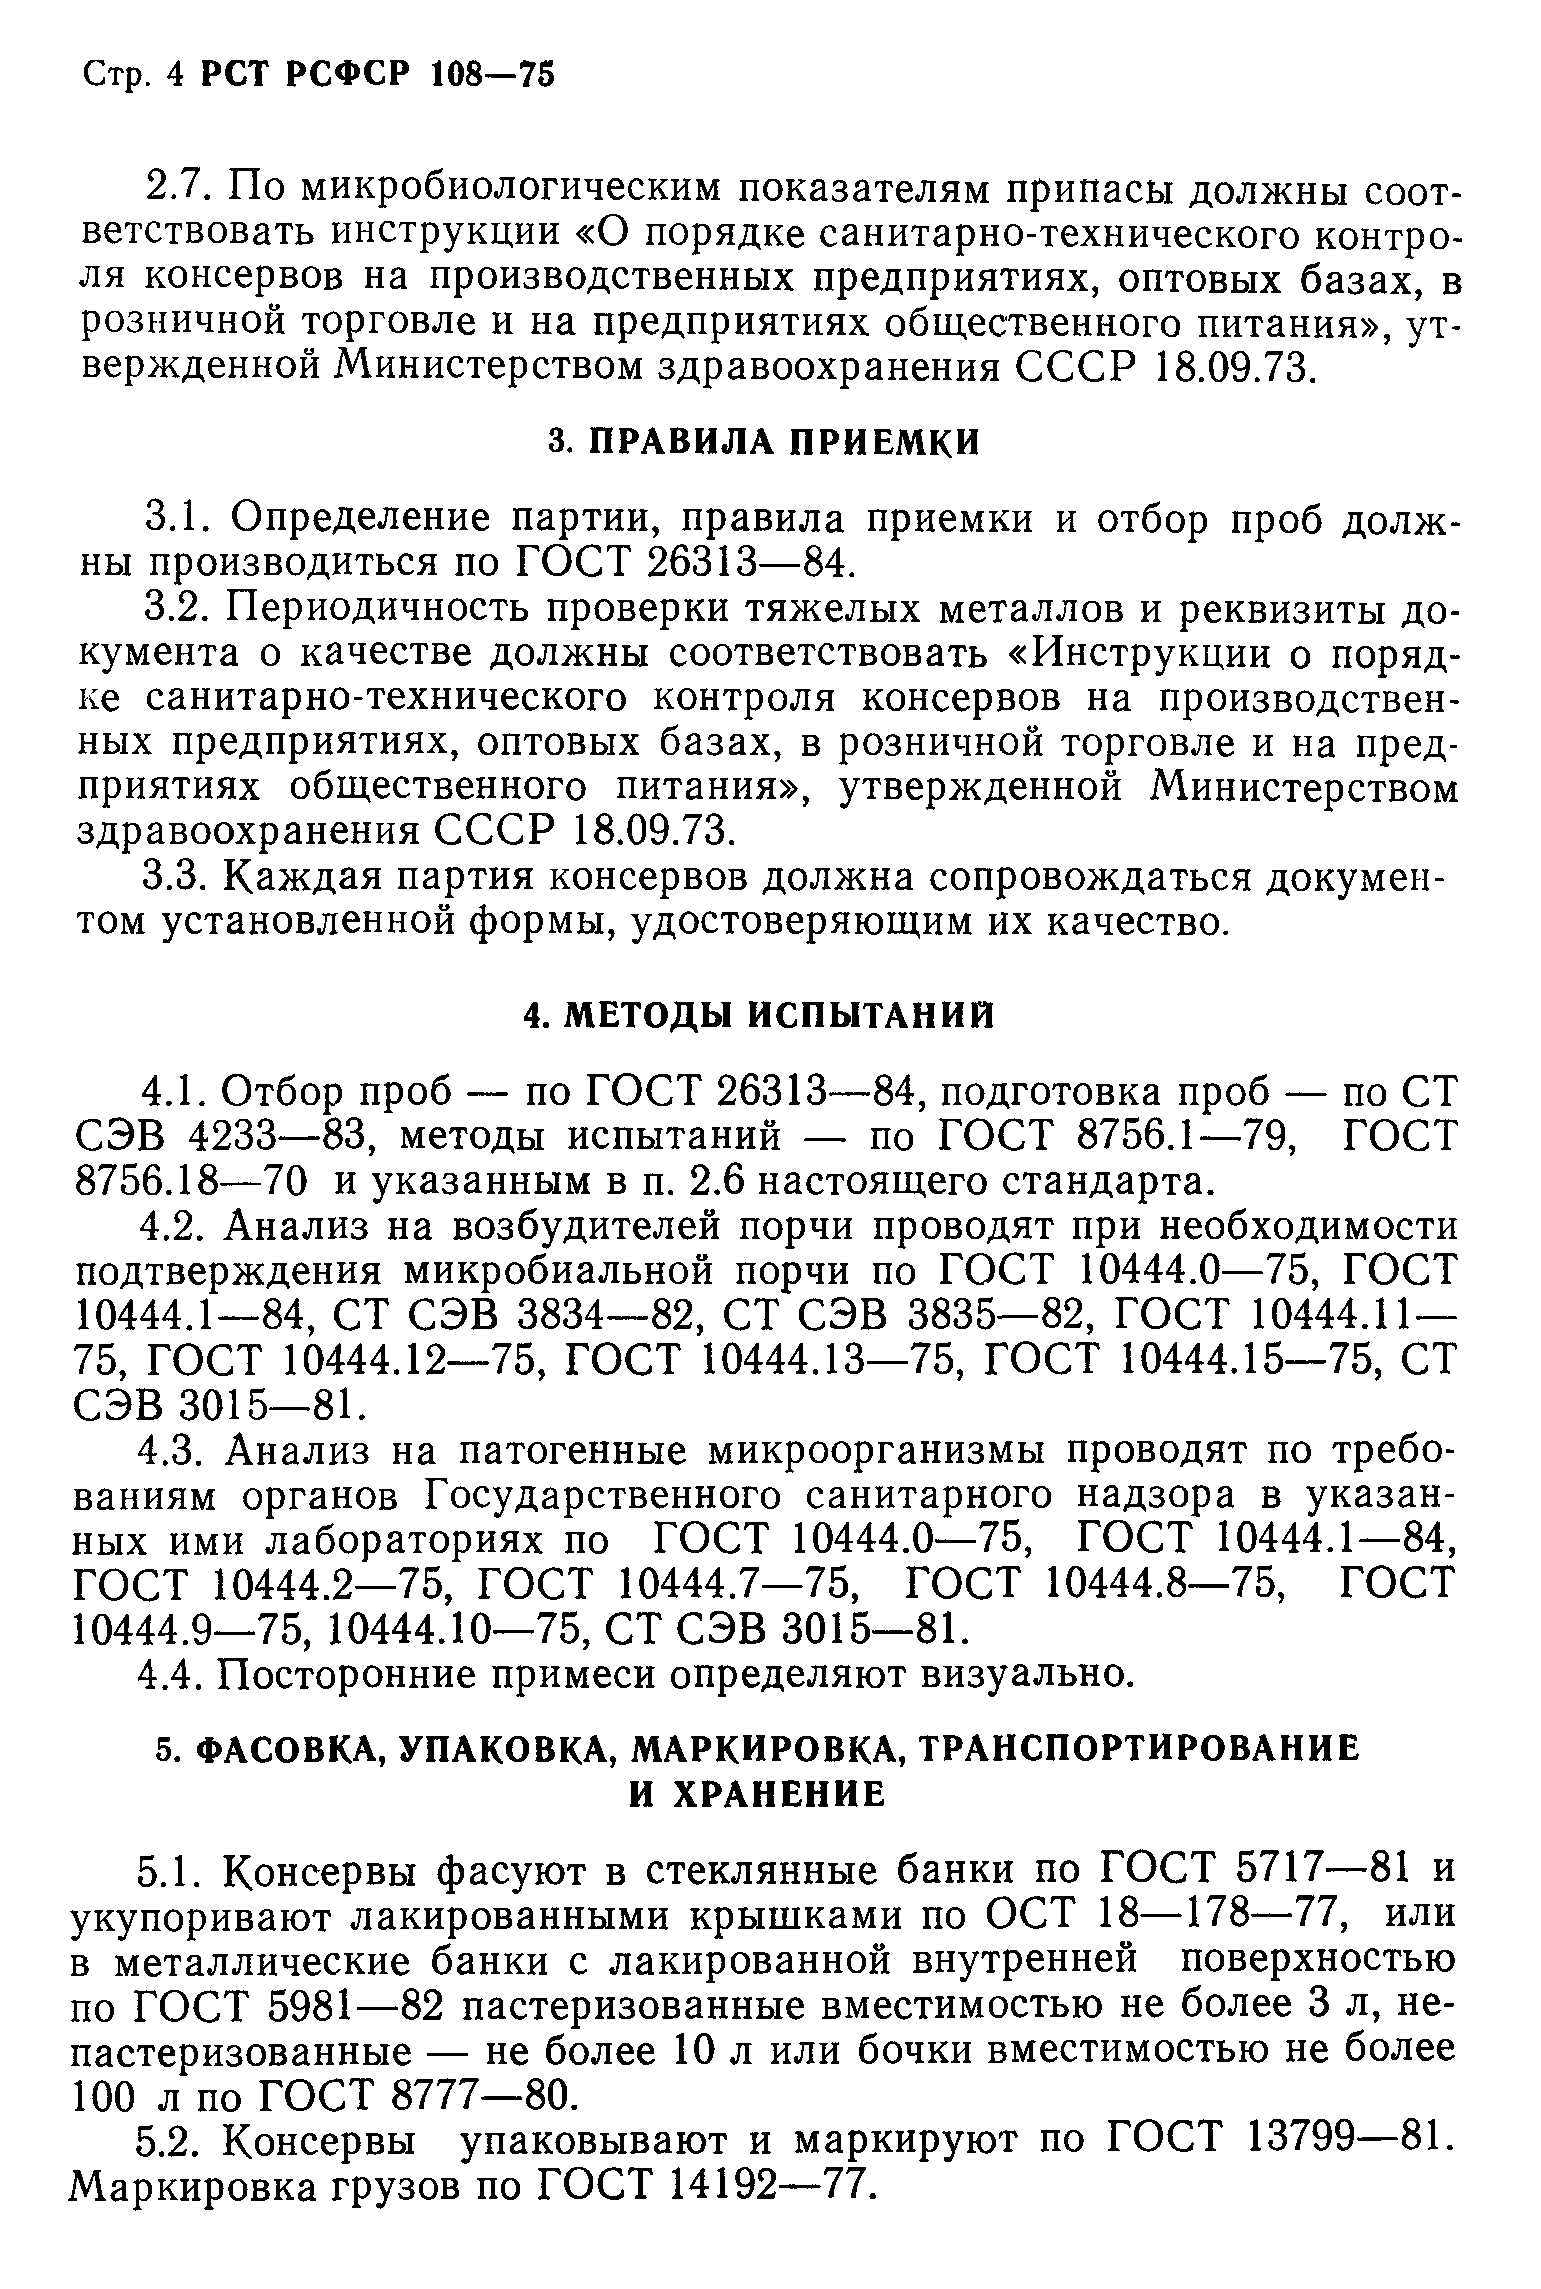 РСТ РСФСР 108-75